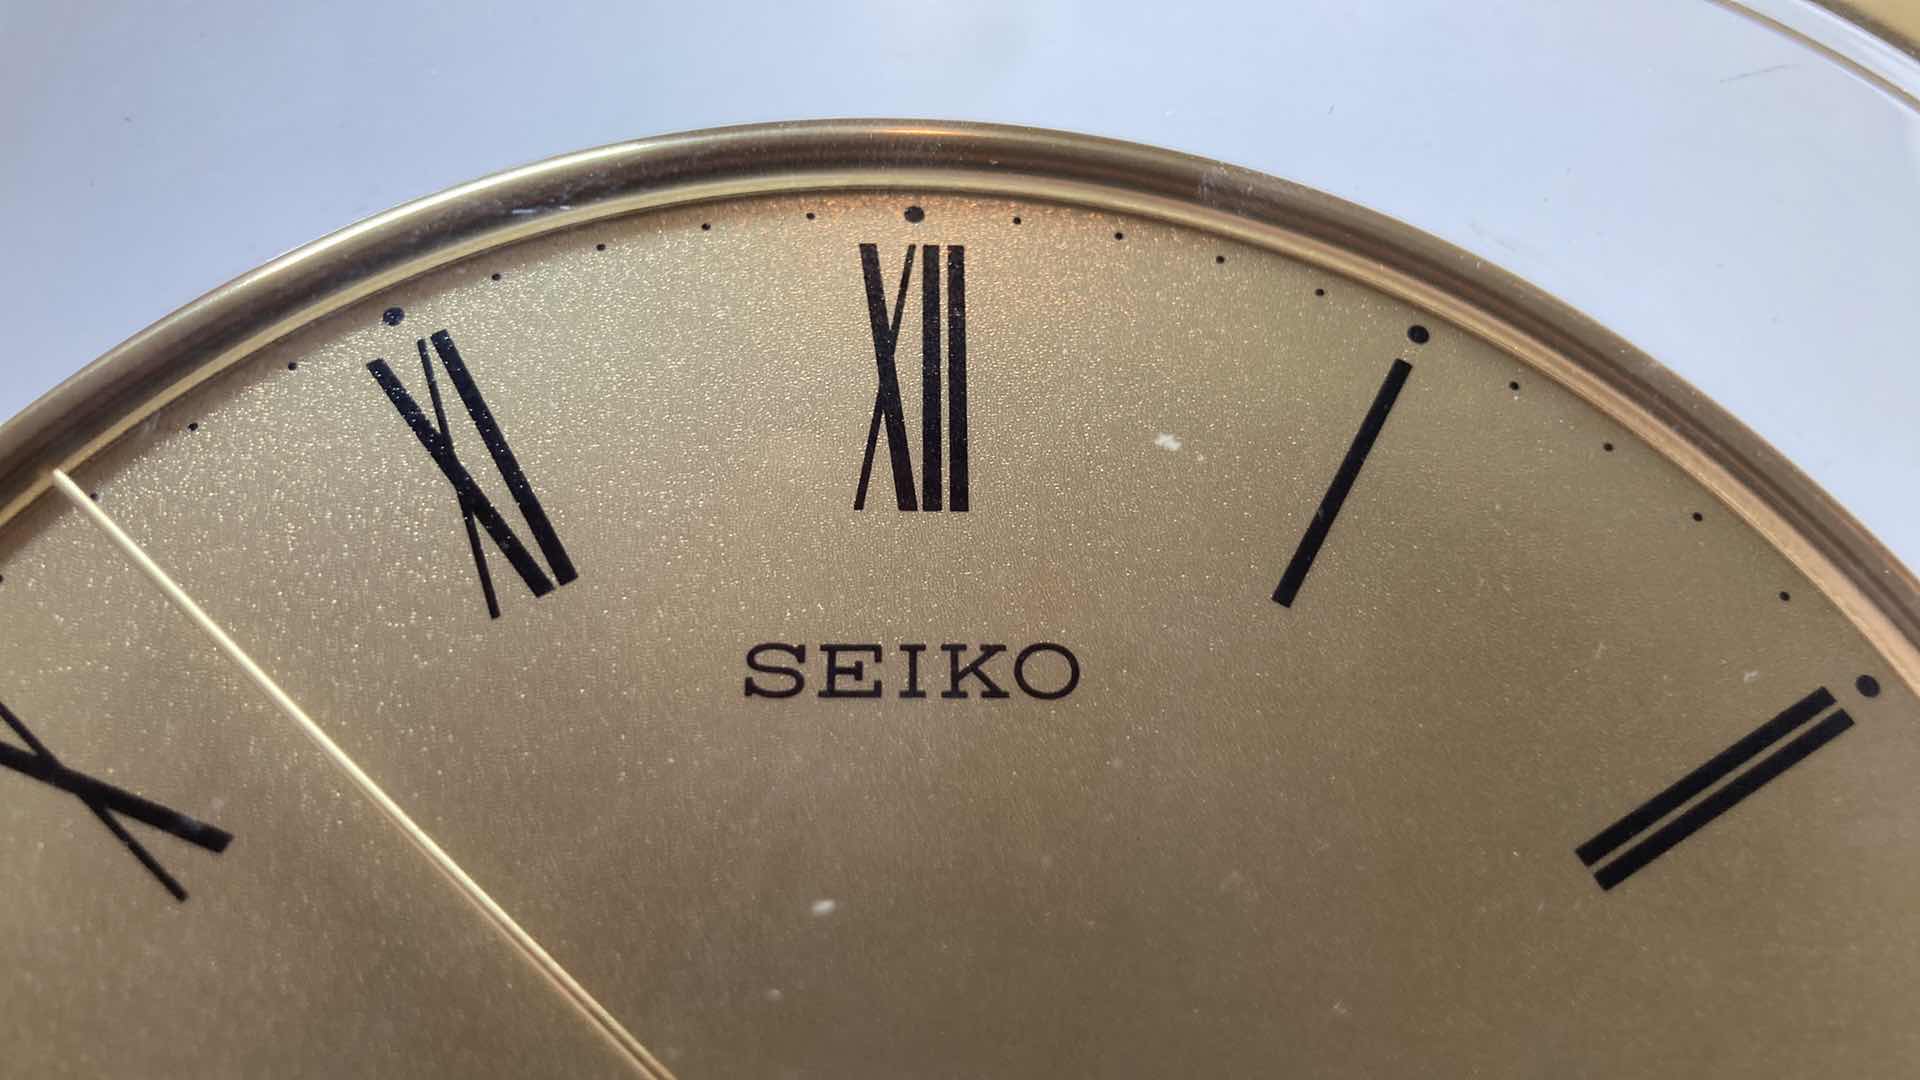 Photo 5 of SEIKO PLASTIC CASE DESK CLOCK 8.5” X 9”